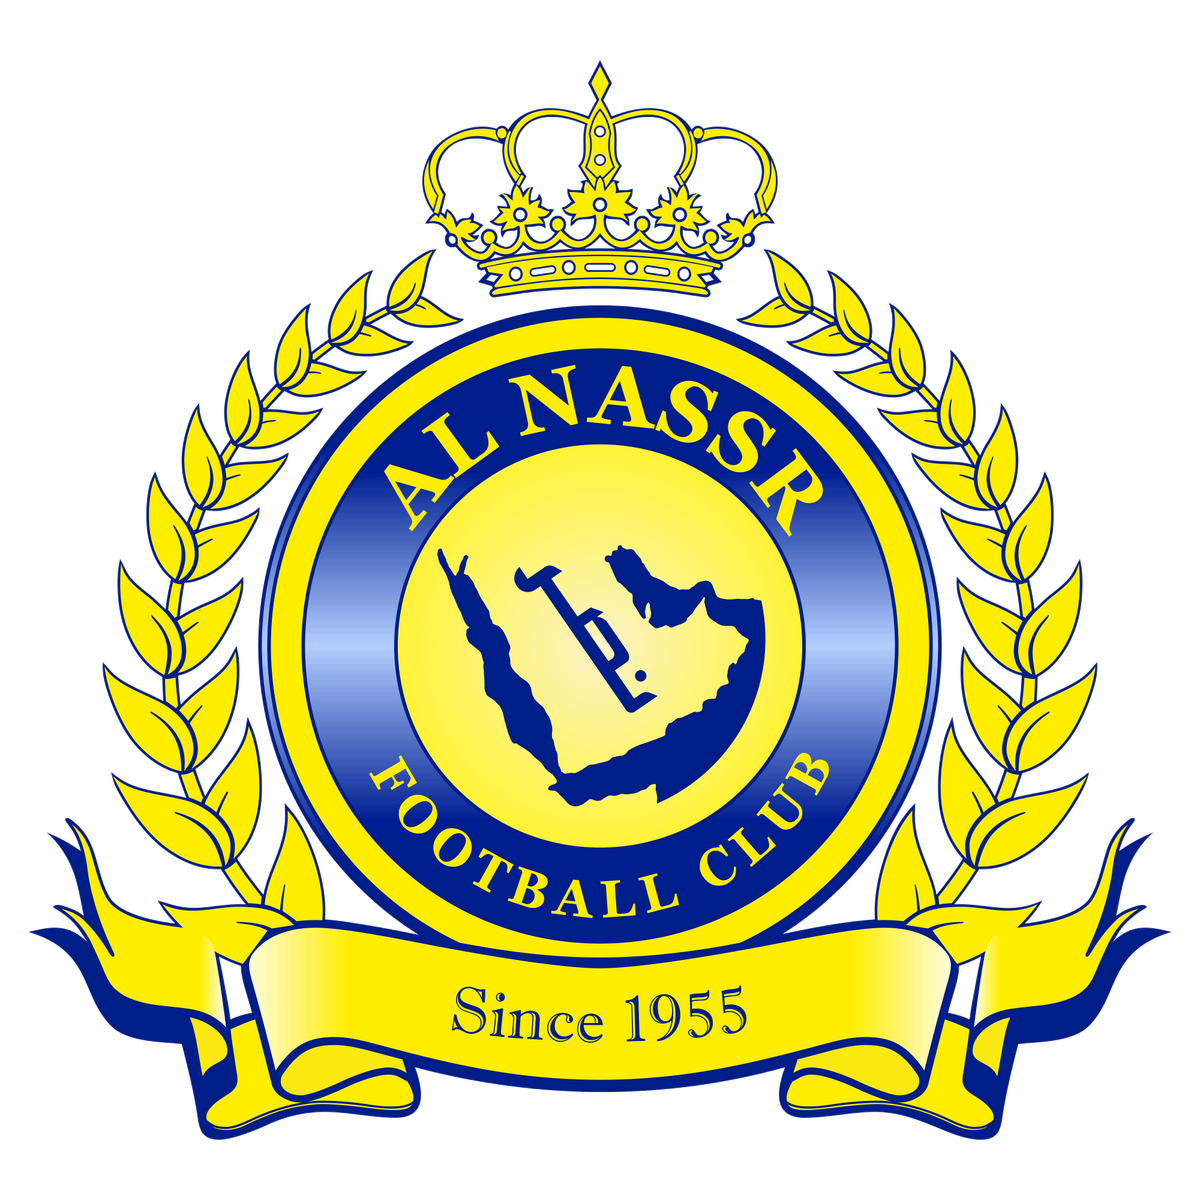 Al Nassr FC - Wikipedia